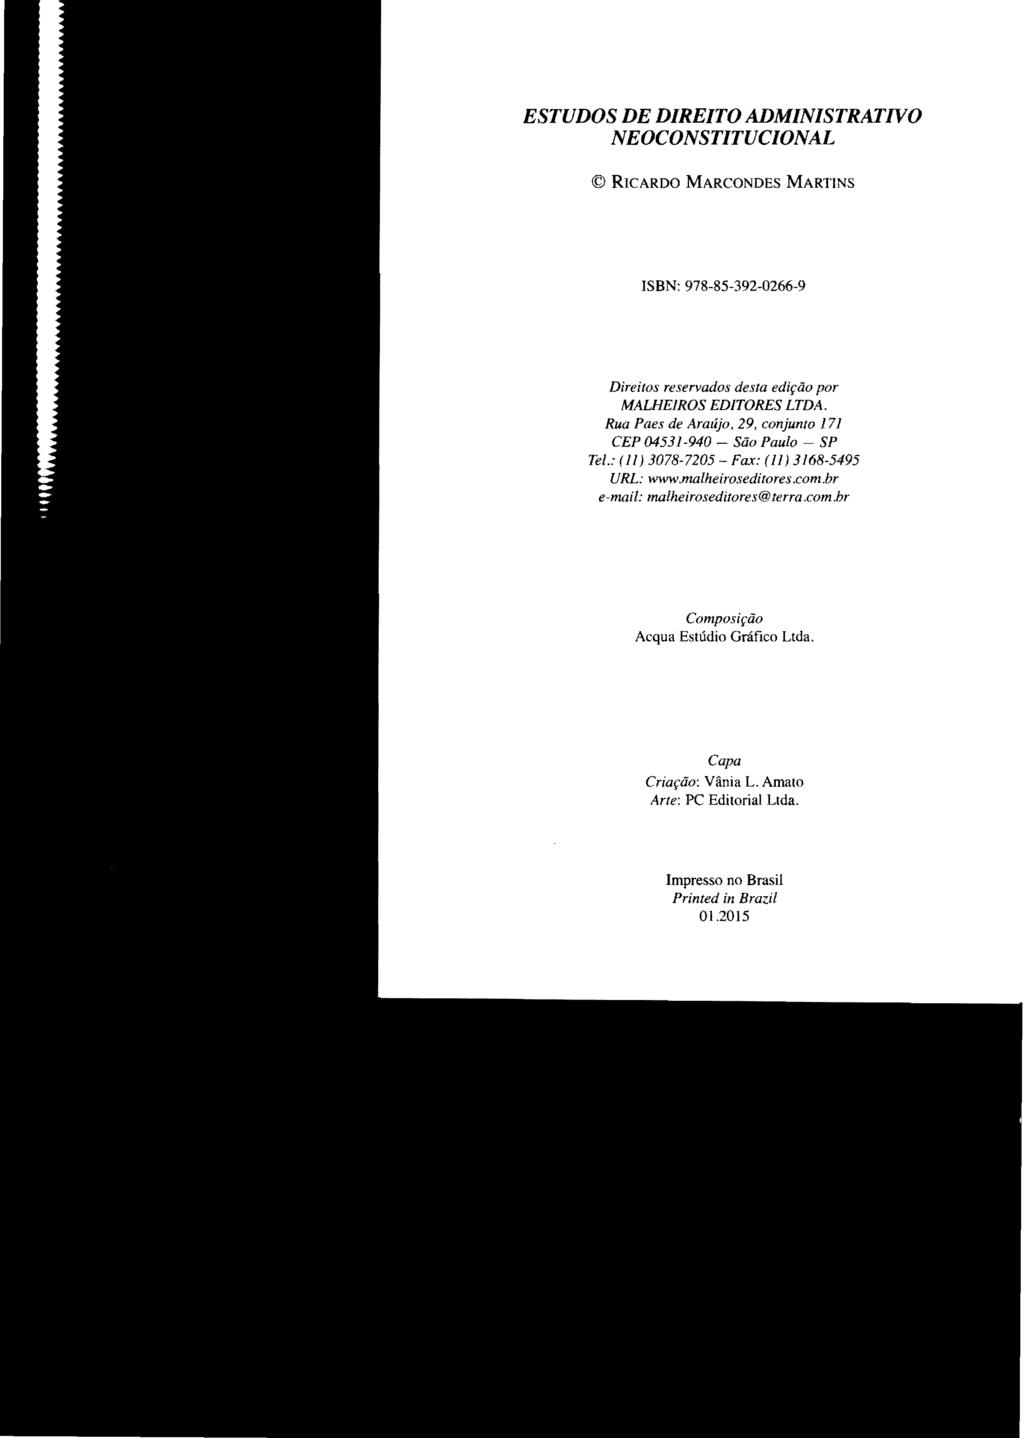 ESTUDOS DE DIREITO ADMINISTRATIVO NEOCONSTITUCIONAL RICARDO MARCONDES MARTINS ISBN: 978-85-392-0266-9 Direitos reservados desta edição por MALHElROS EDITORES LTDA.